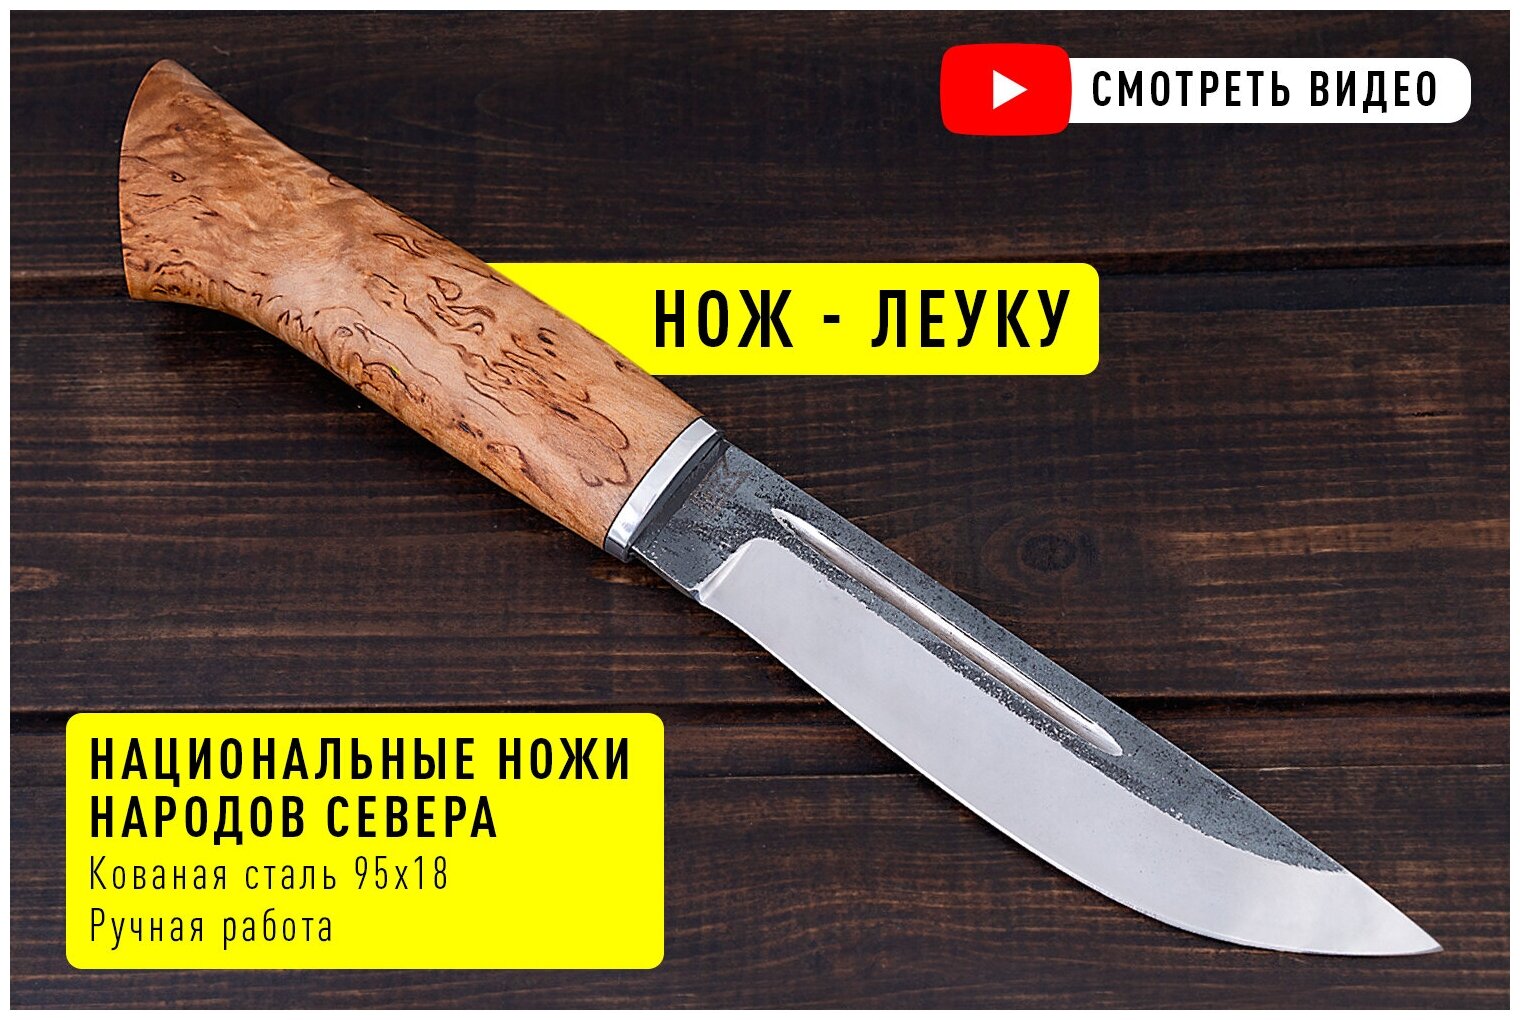 Охотничий финский нож из кованой стали 95х18 с рукояткой из Карельской березы